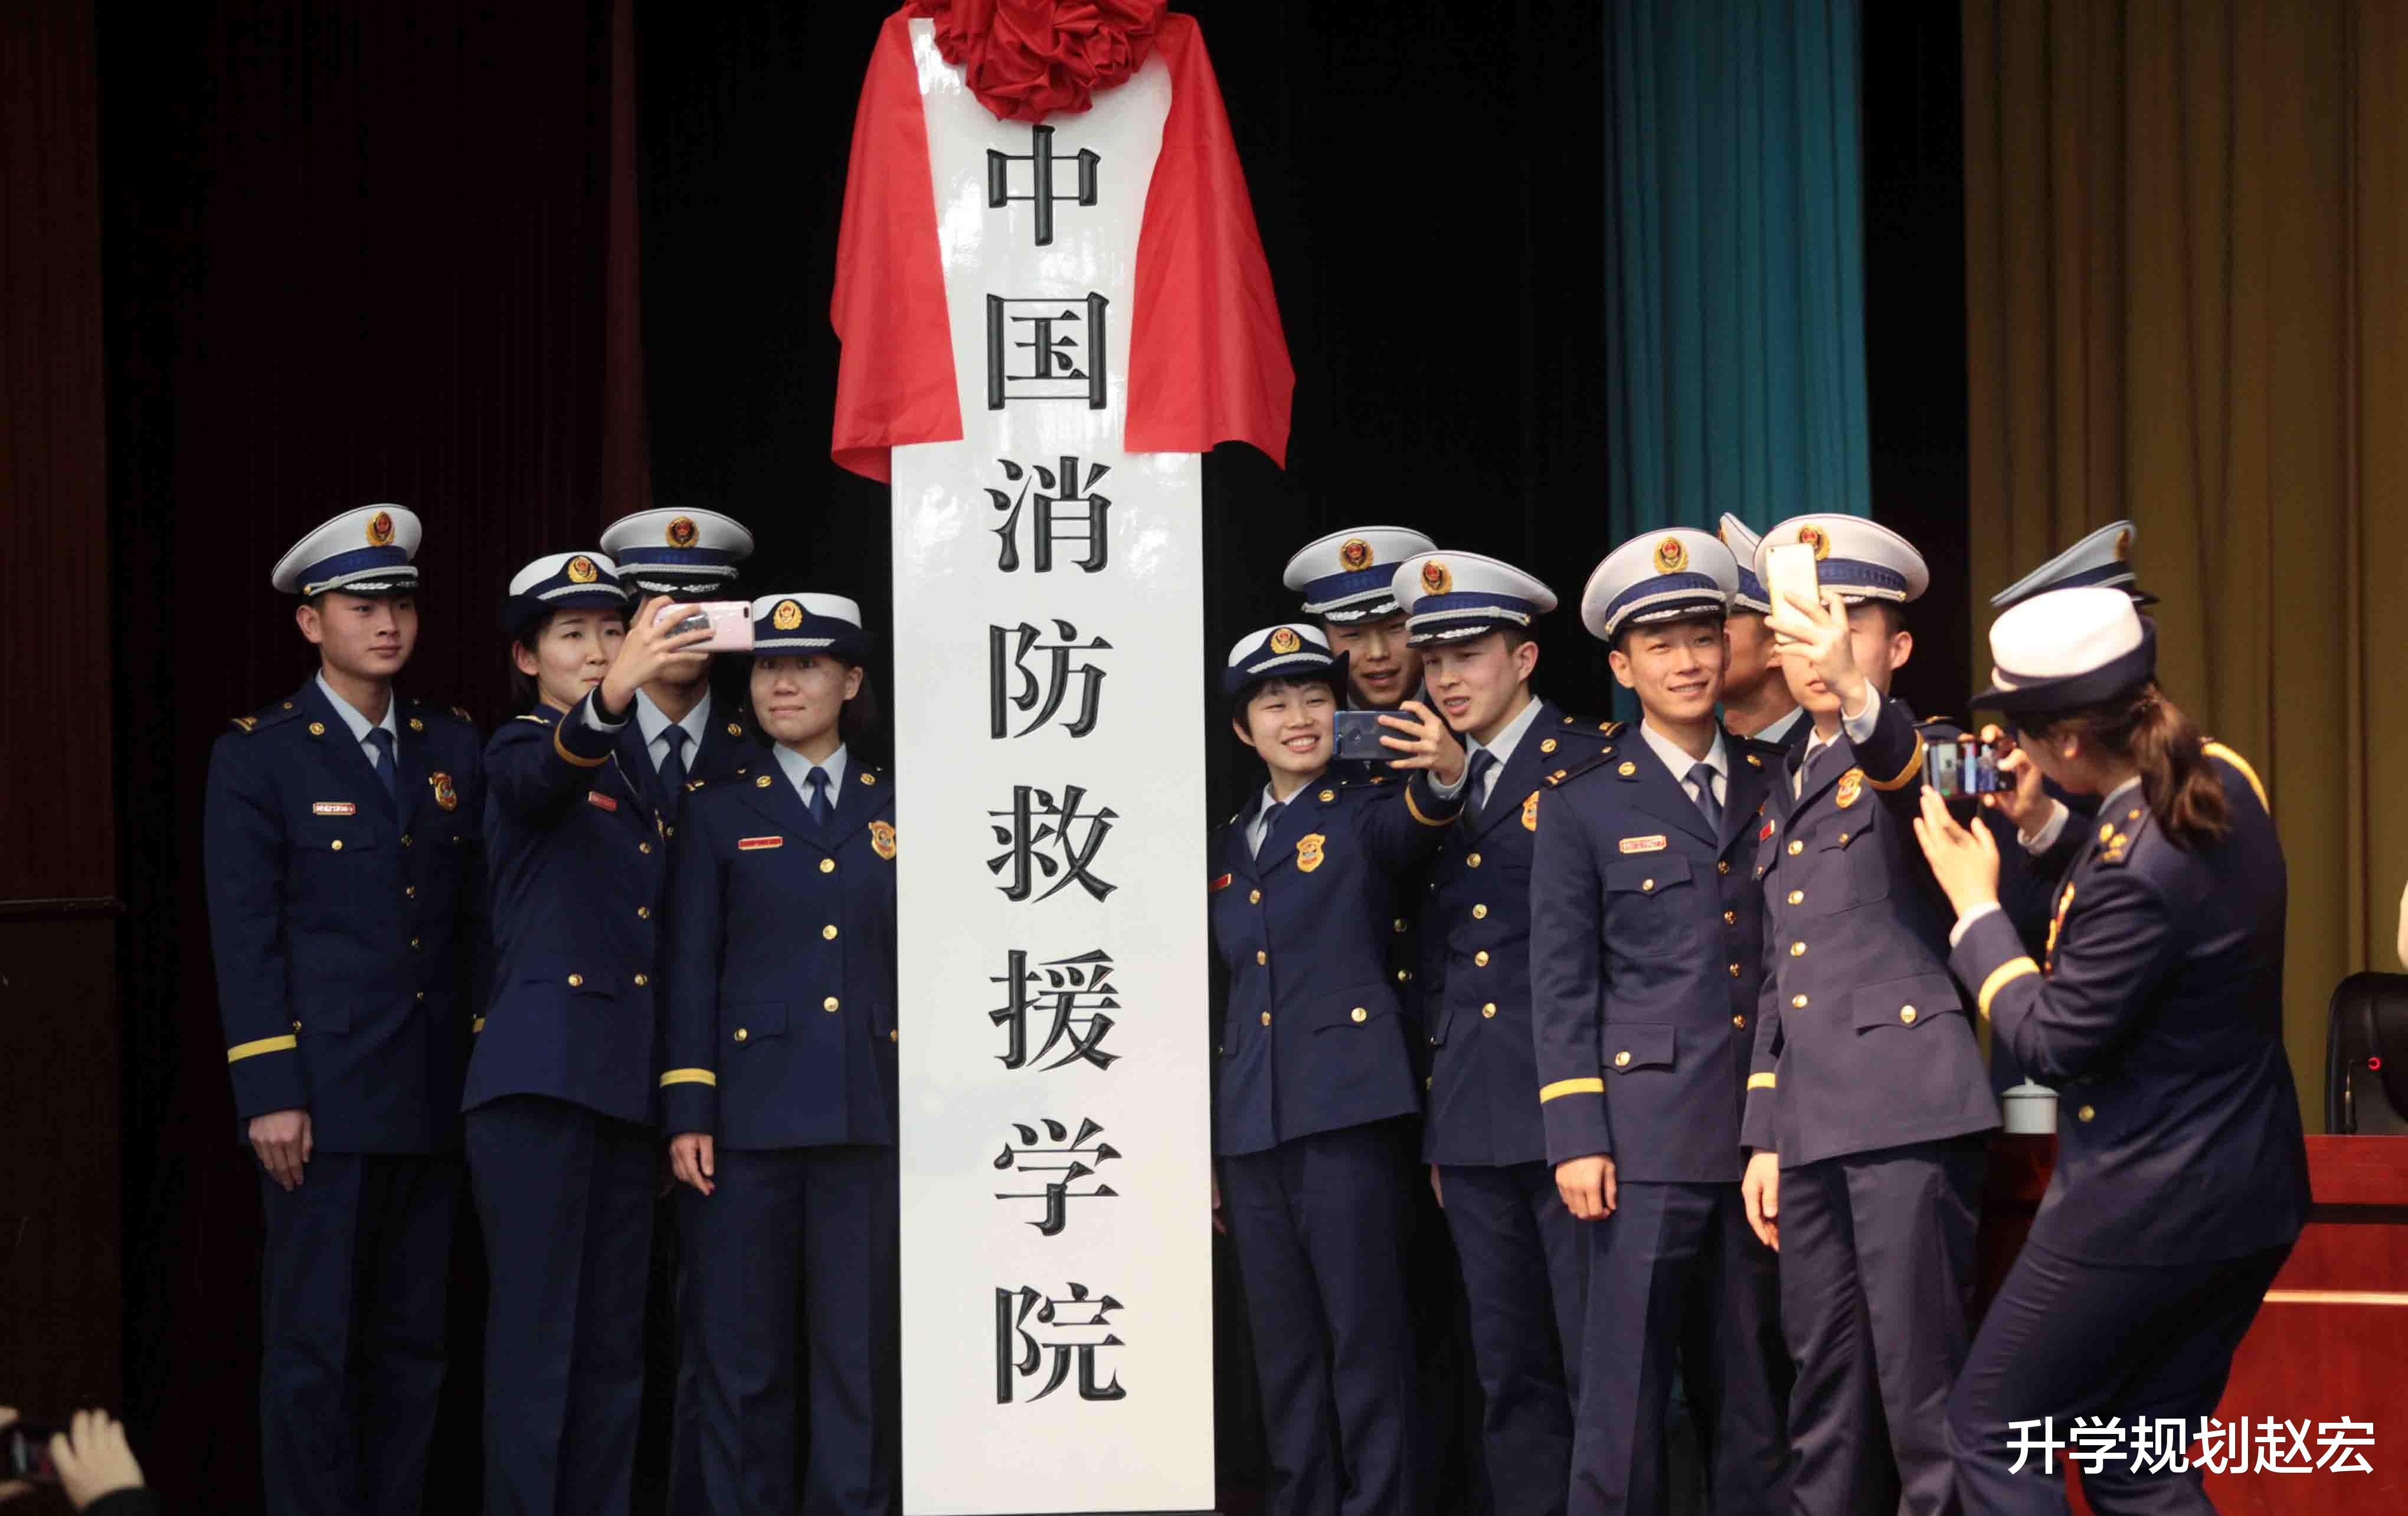 中国消防救援学院2021在川专业分, 分差高达96分, 位次降36070名